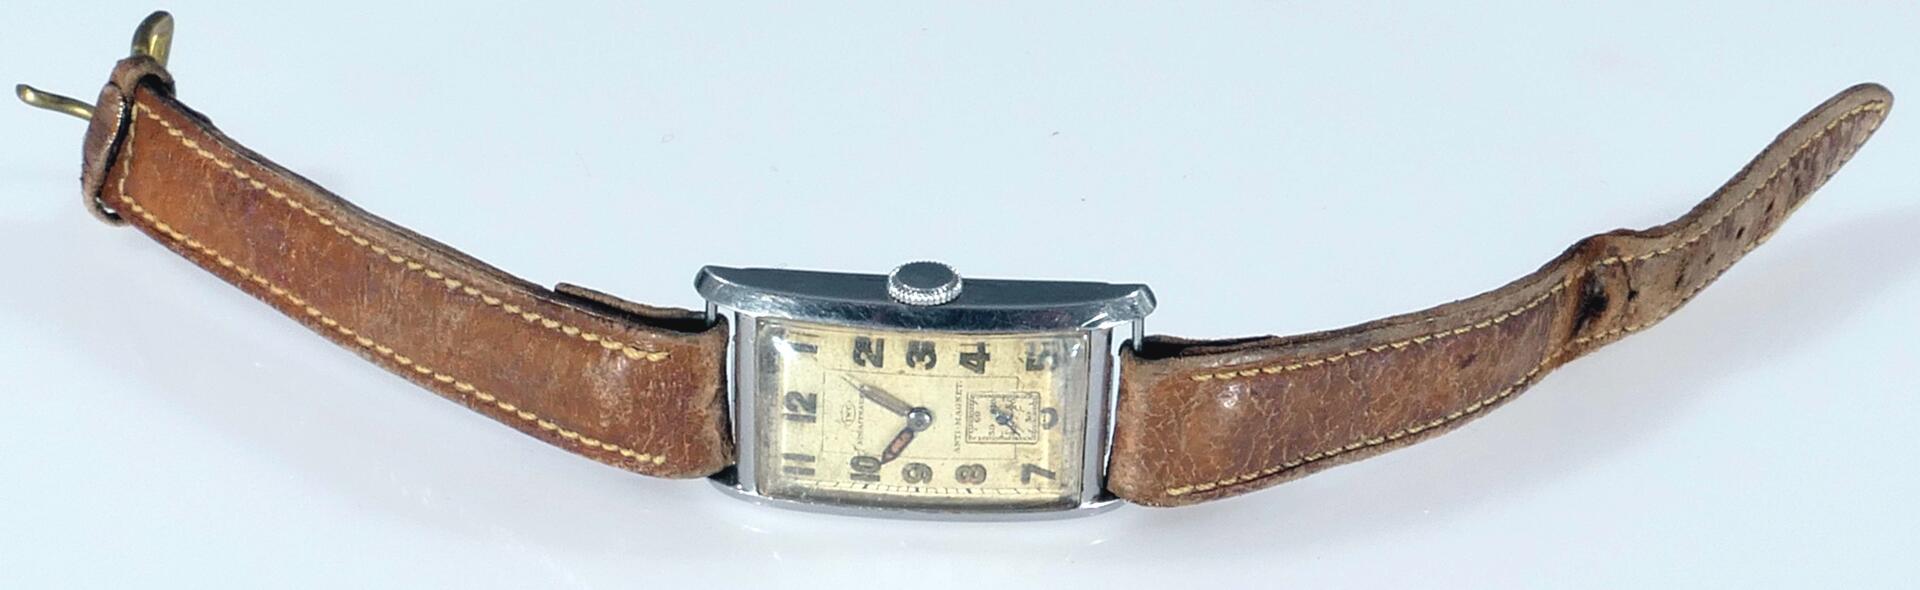 IWC - Herrenarmbanduhr, der 1920er / 30er Jahre, rechteckiges Stahlgehäuse, Uhrwerk mit Handaufzug, - Image 11 of 11